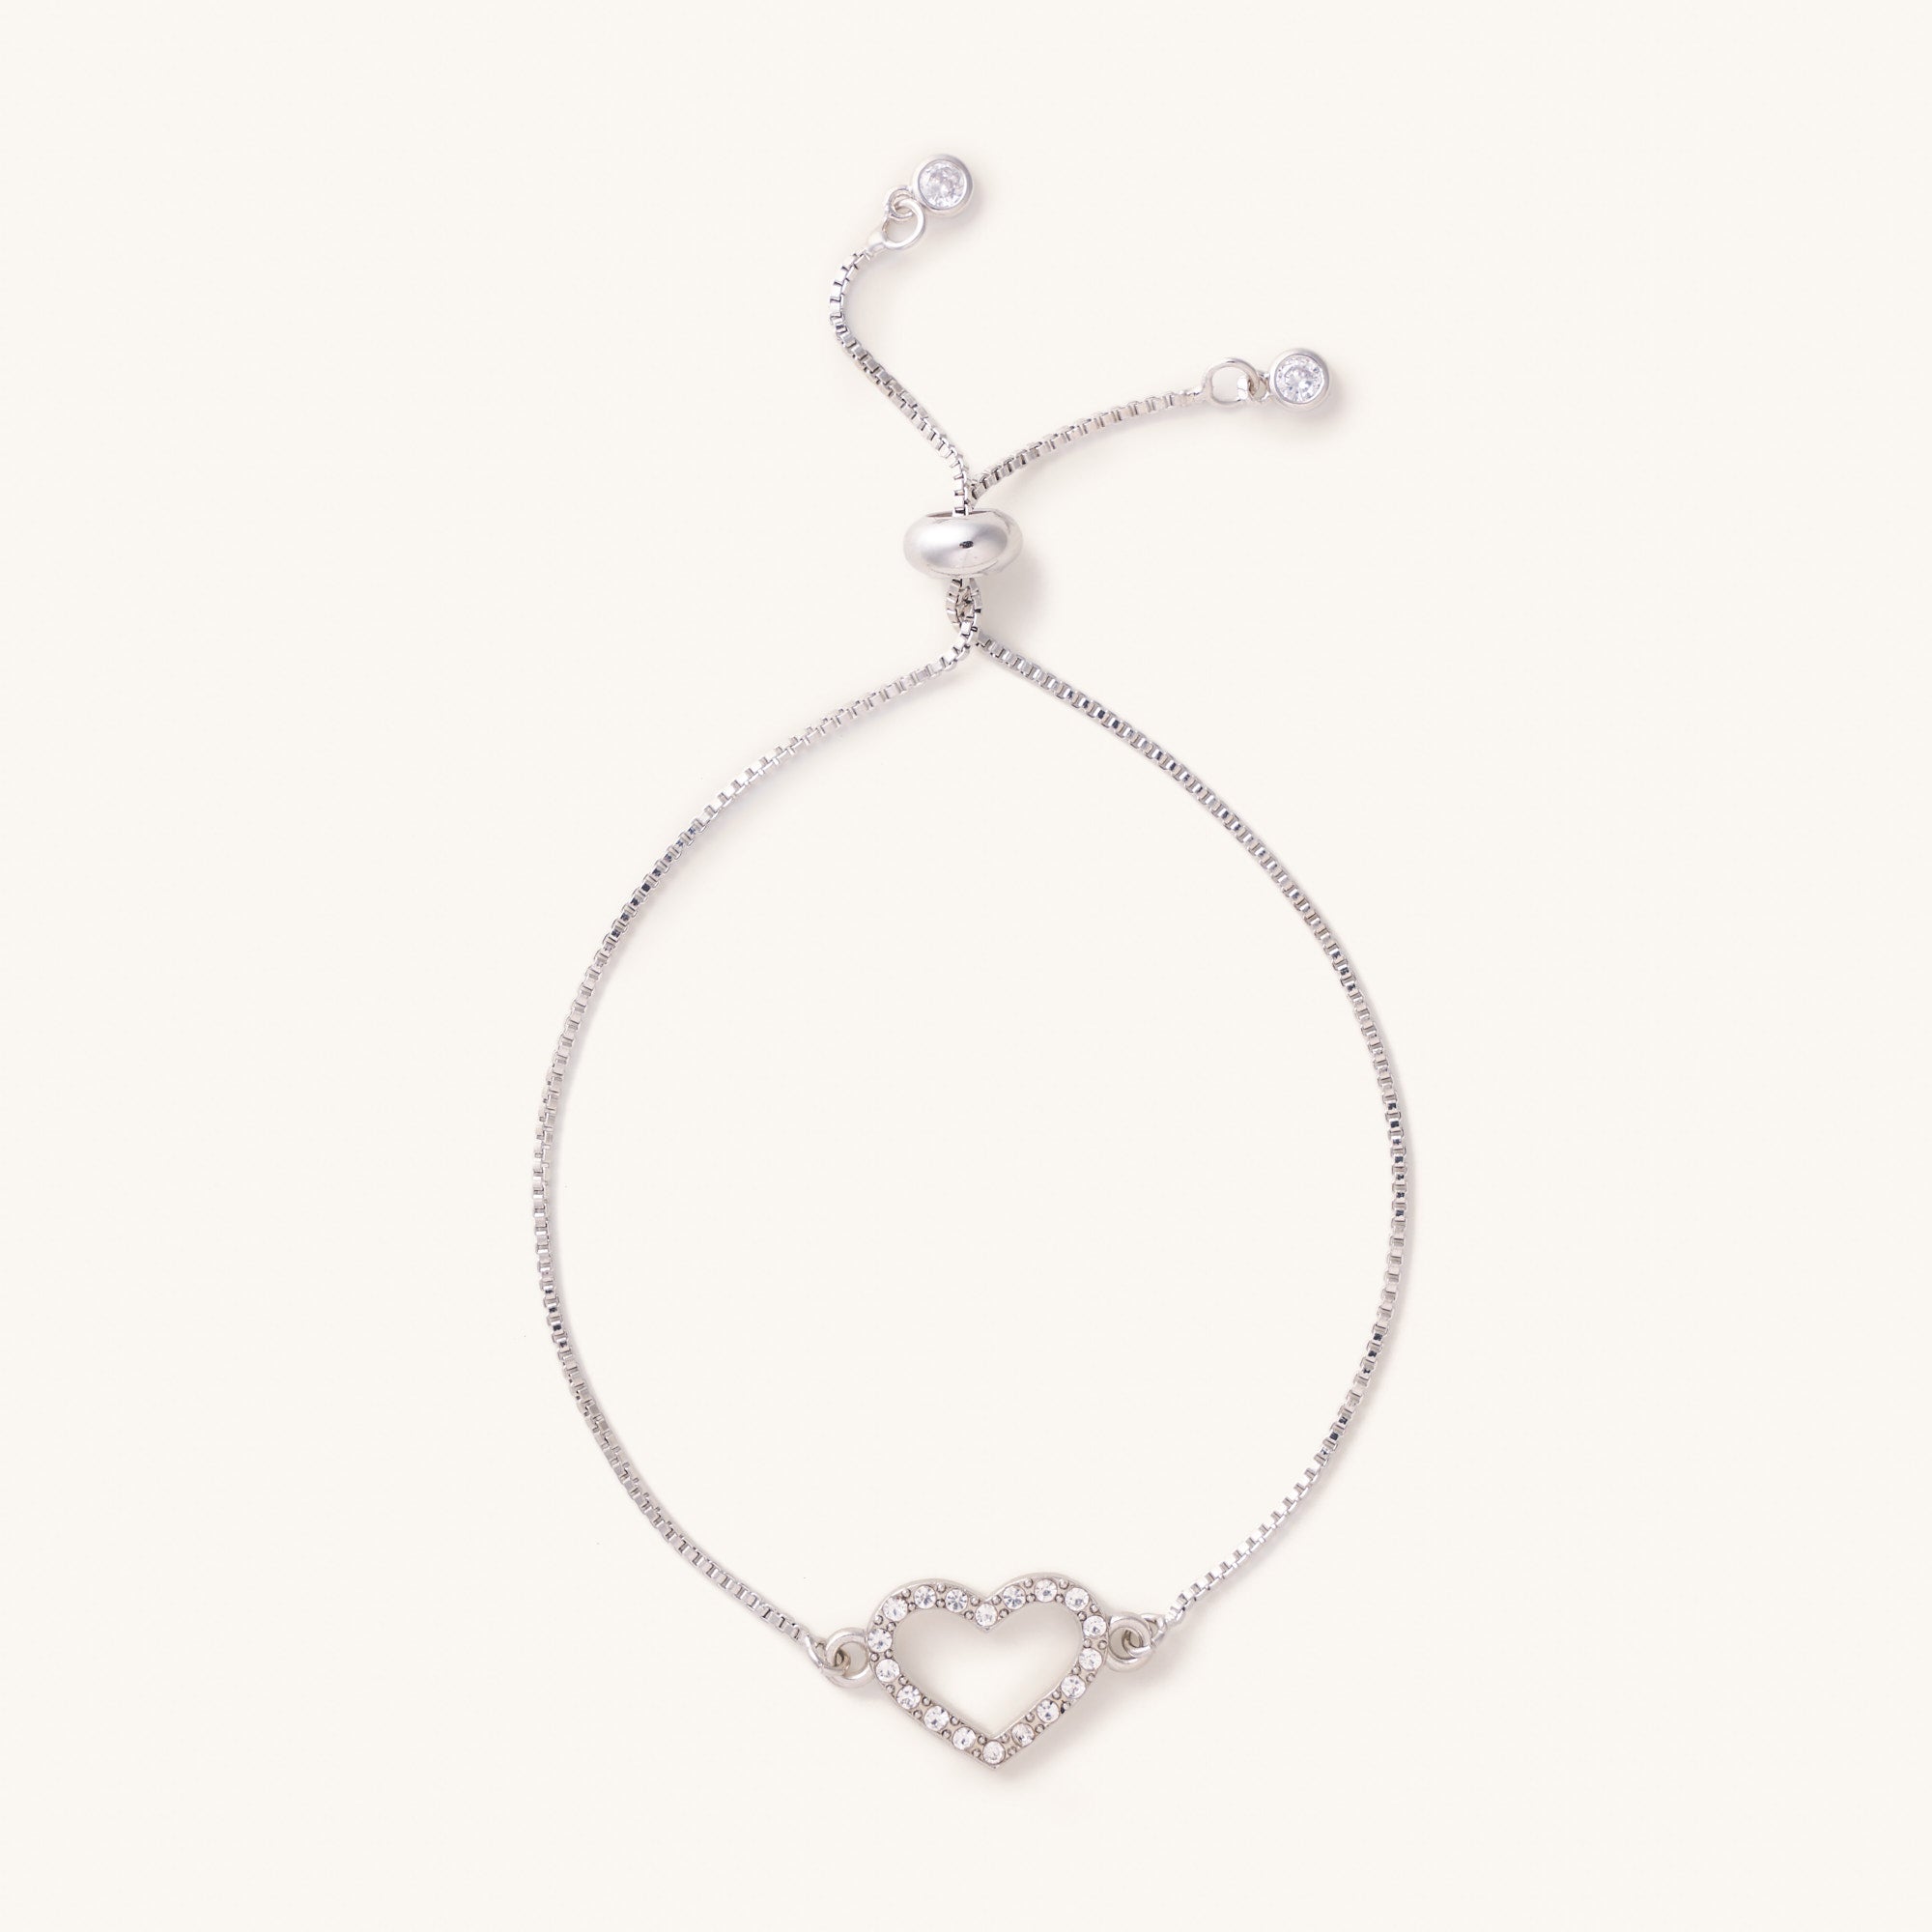 Buy AMIGUO Women Infinity Love Heart Bracelet, 925 Sterling Silver  Adjustable Charm Forever Bracelet for Women Girls Online at desertcartINDIA